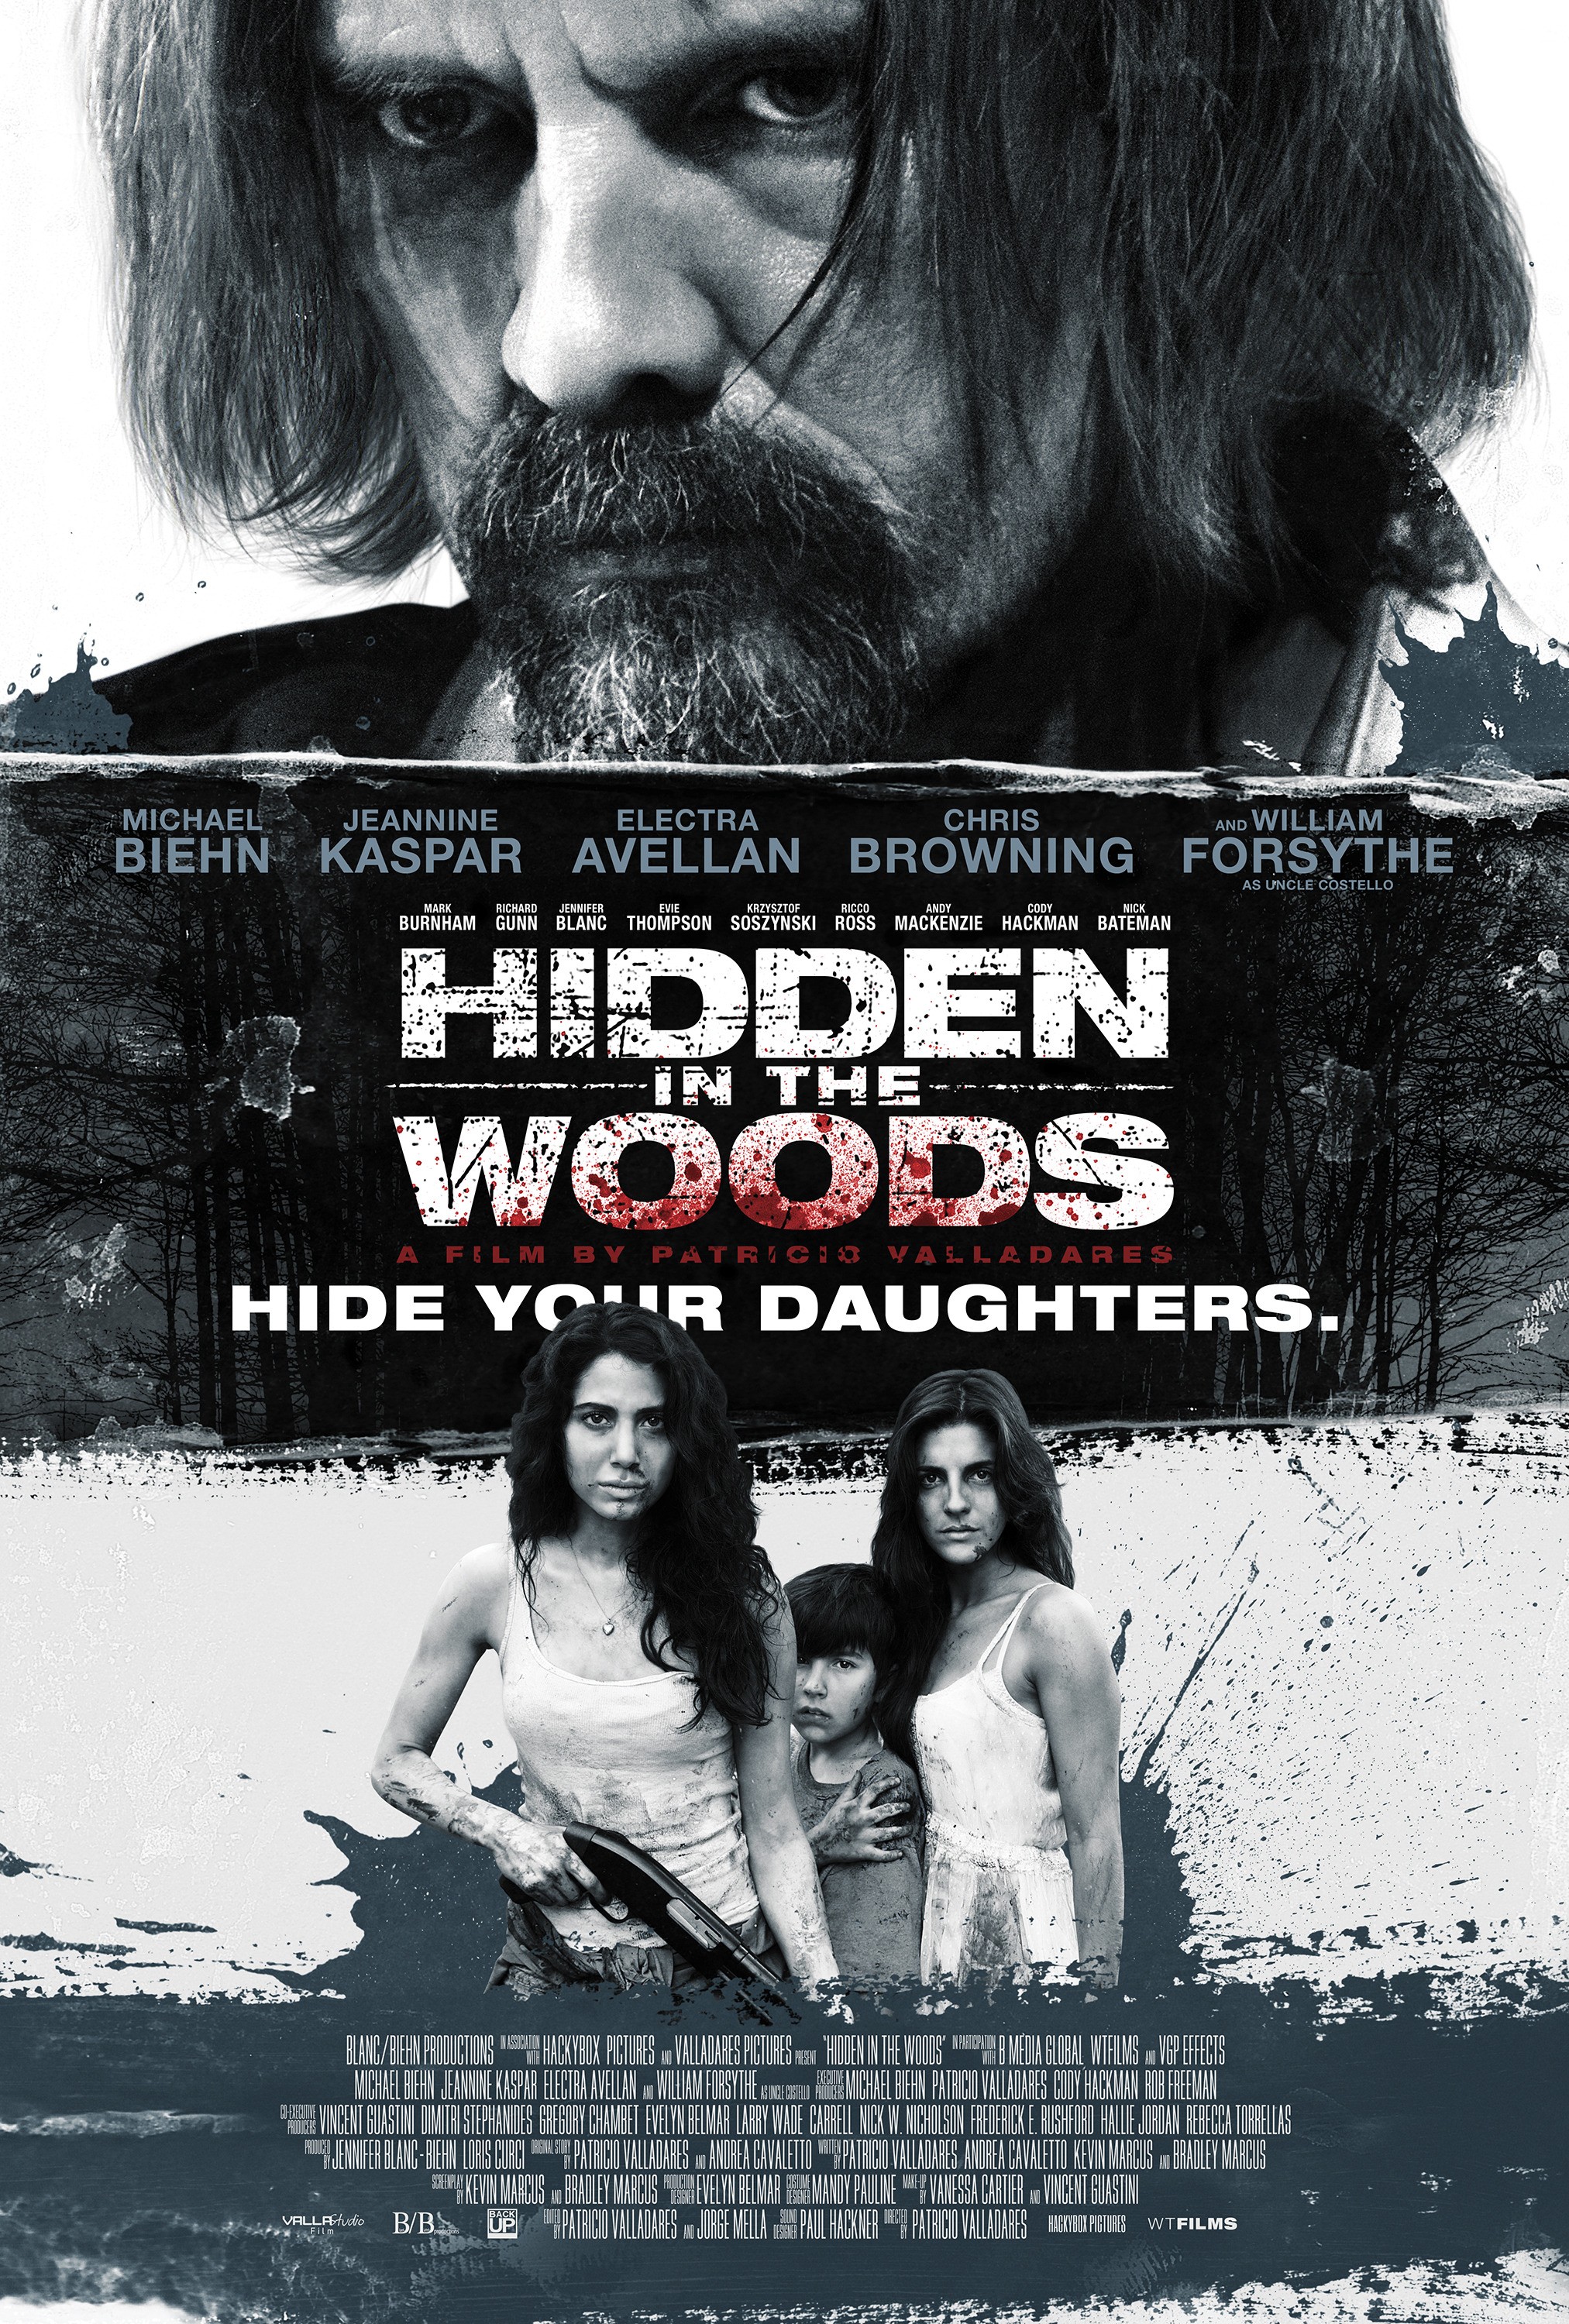 Hidden in the Woods - Poster 4
Keywords: media_poster;hidden_woods_img